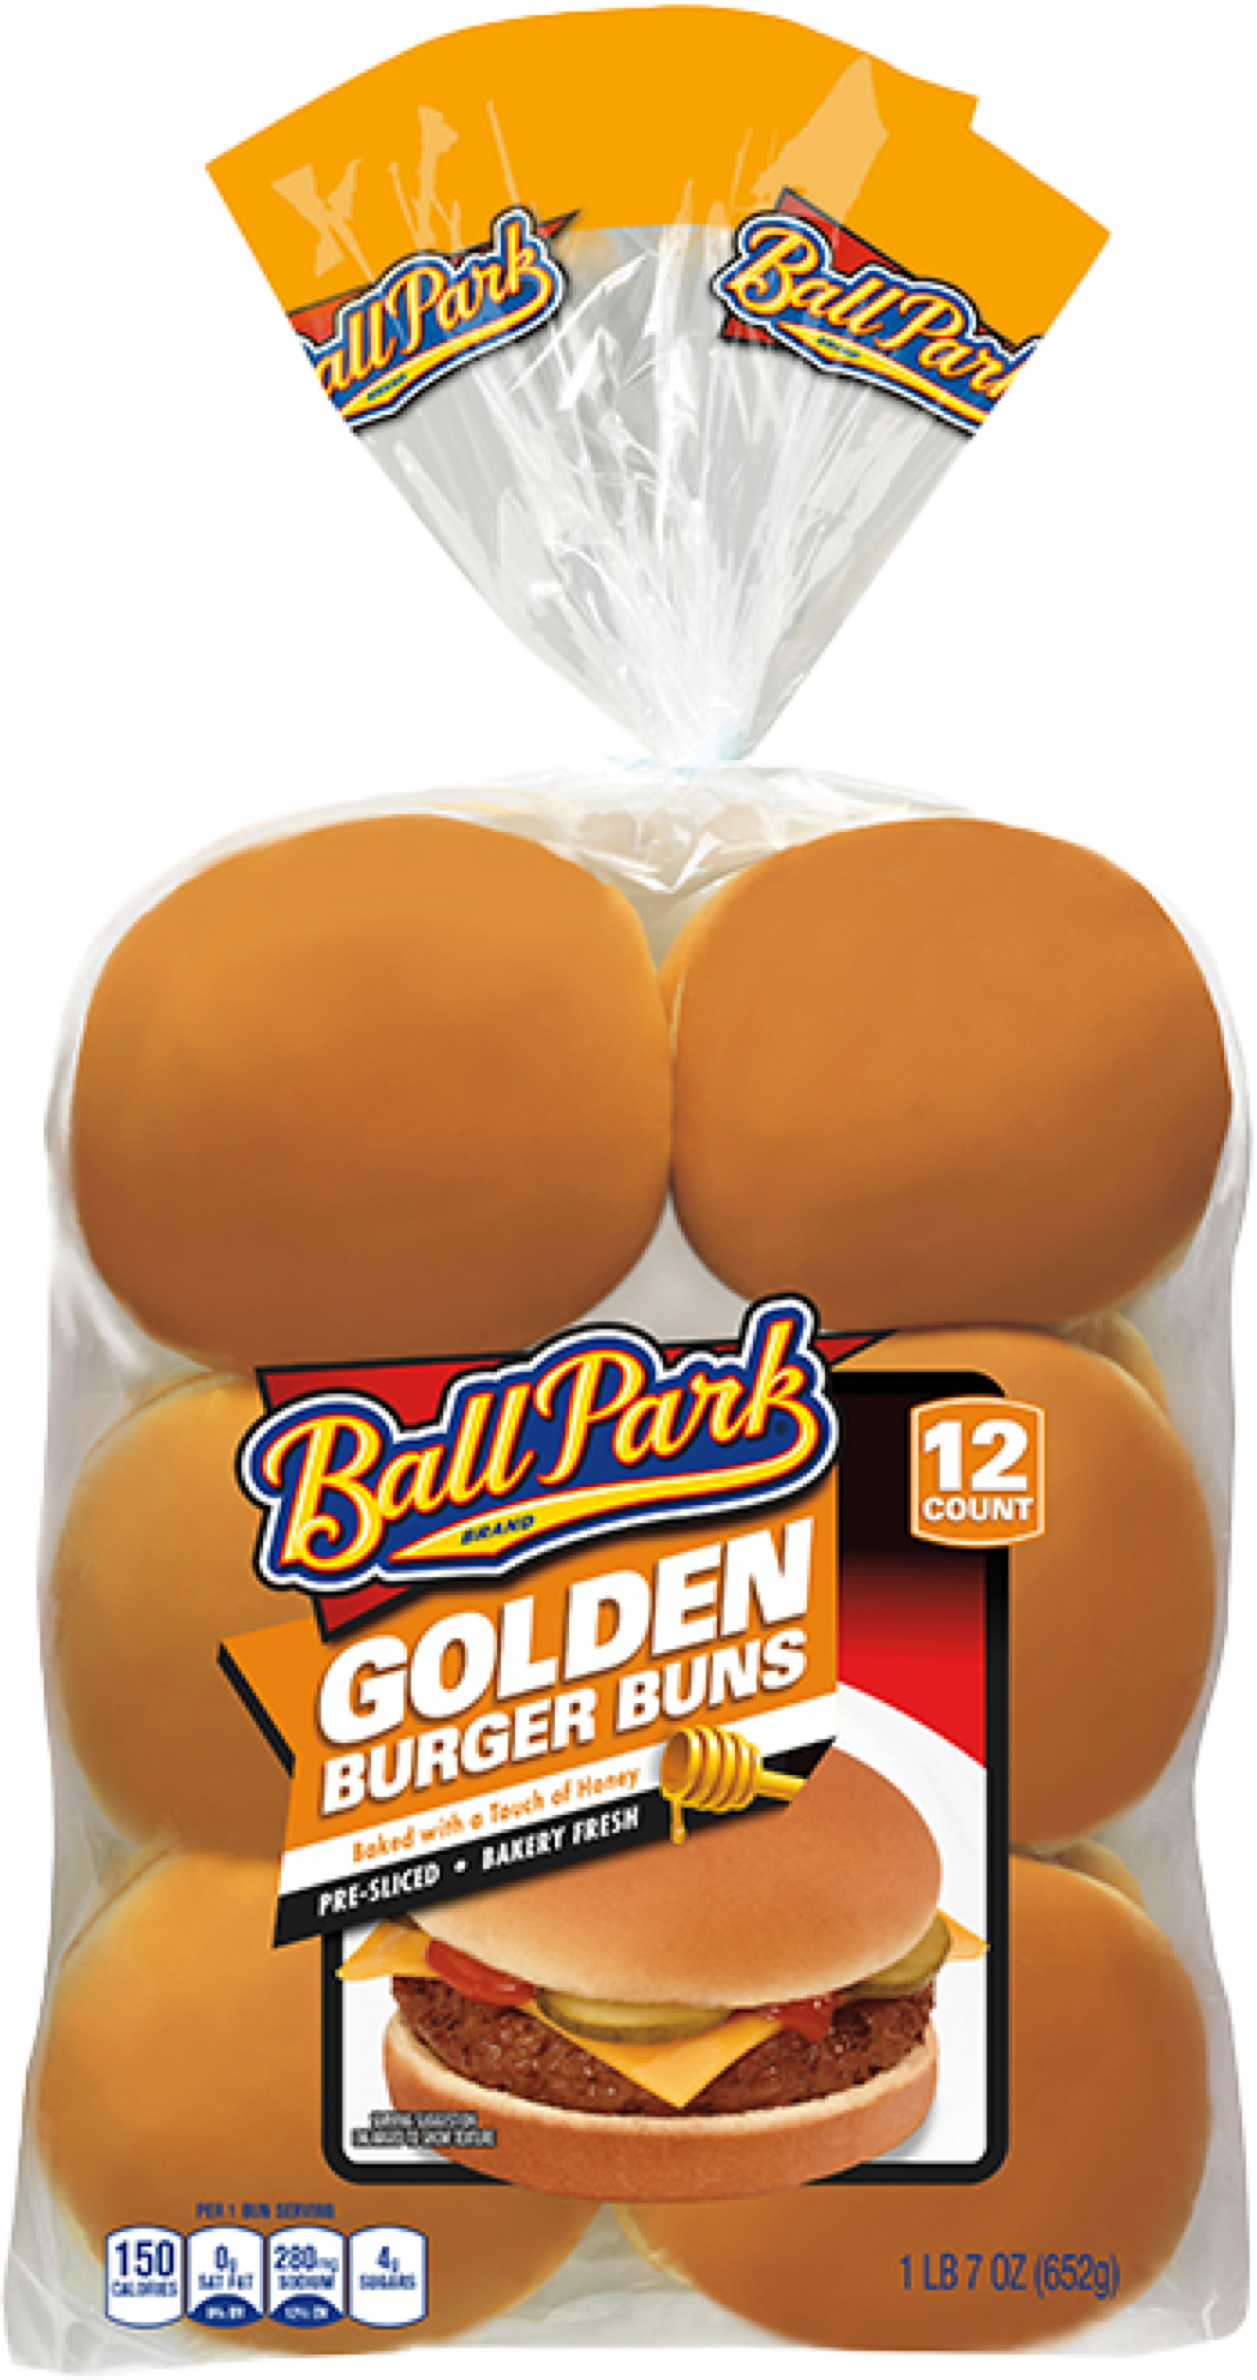 Ball Park Golden Burger Buns